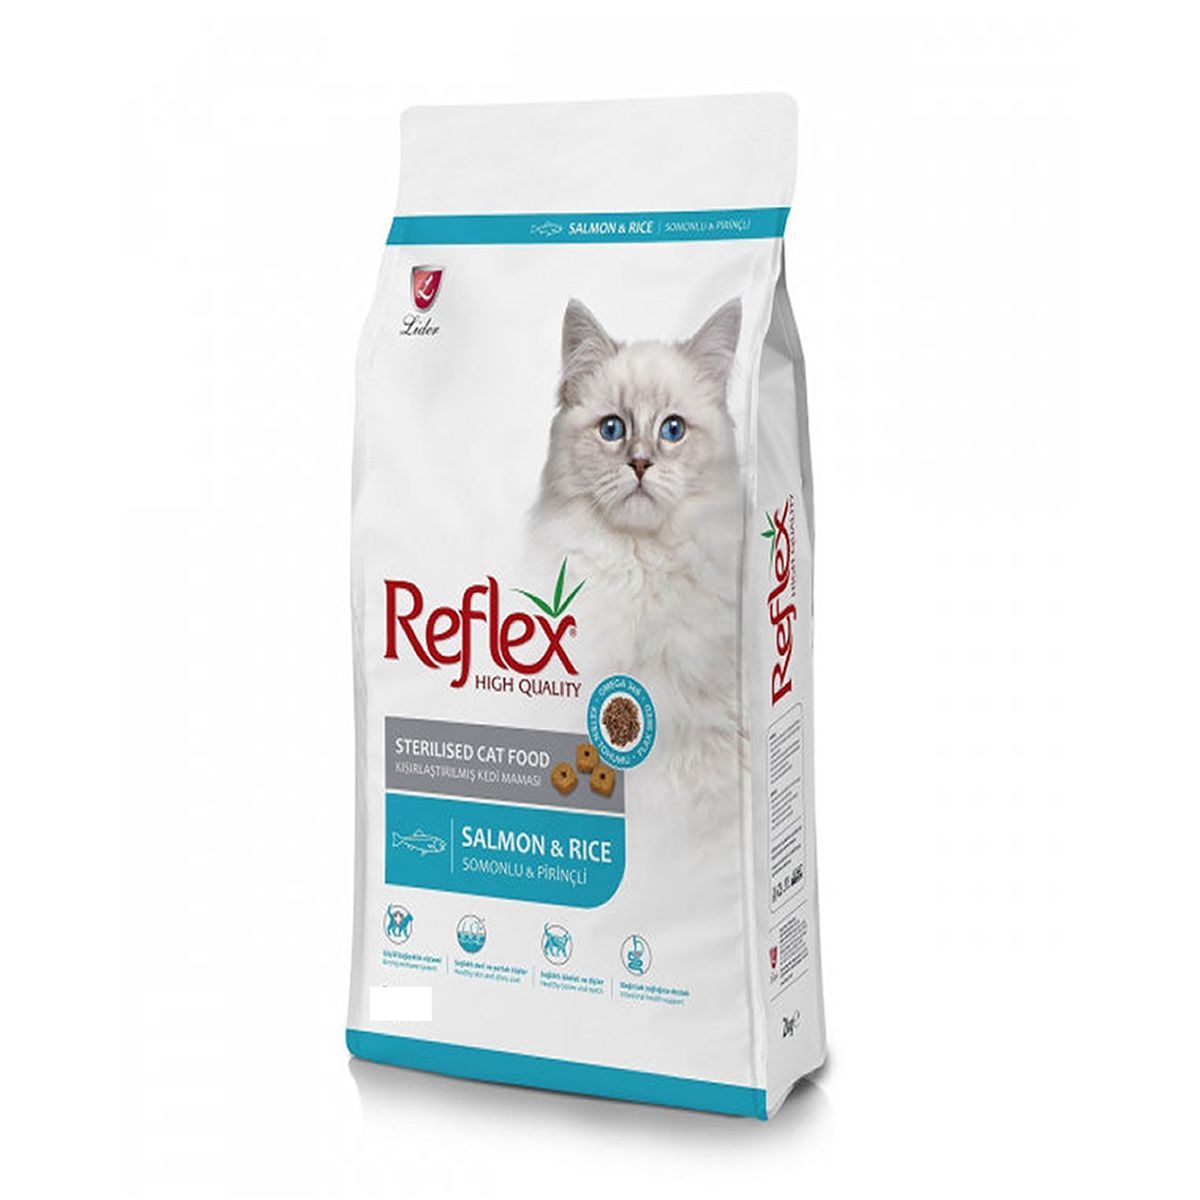 Reflex Sterilised Kısırlaştırılmış Kedi Maması 15 Kg